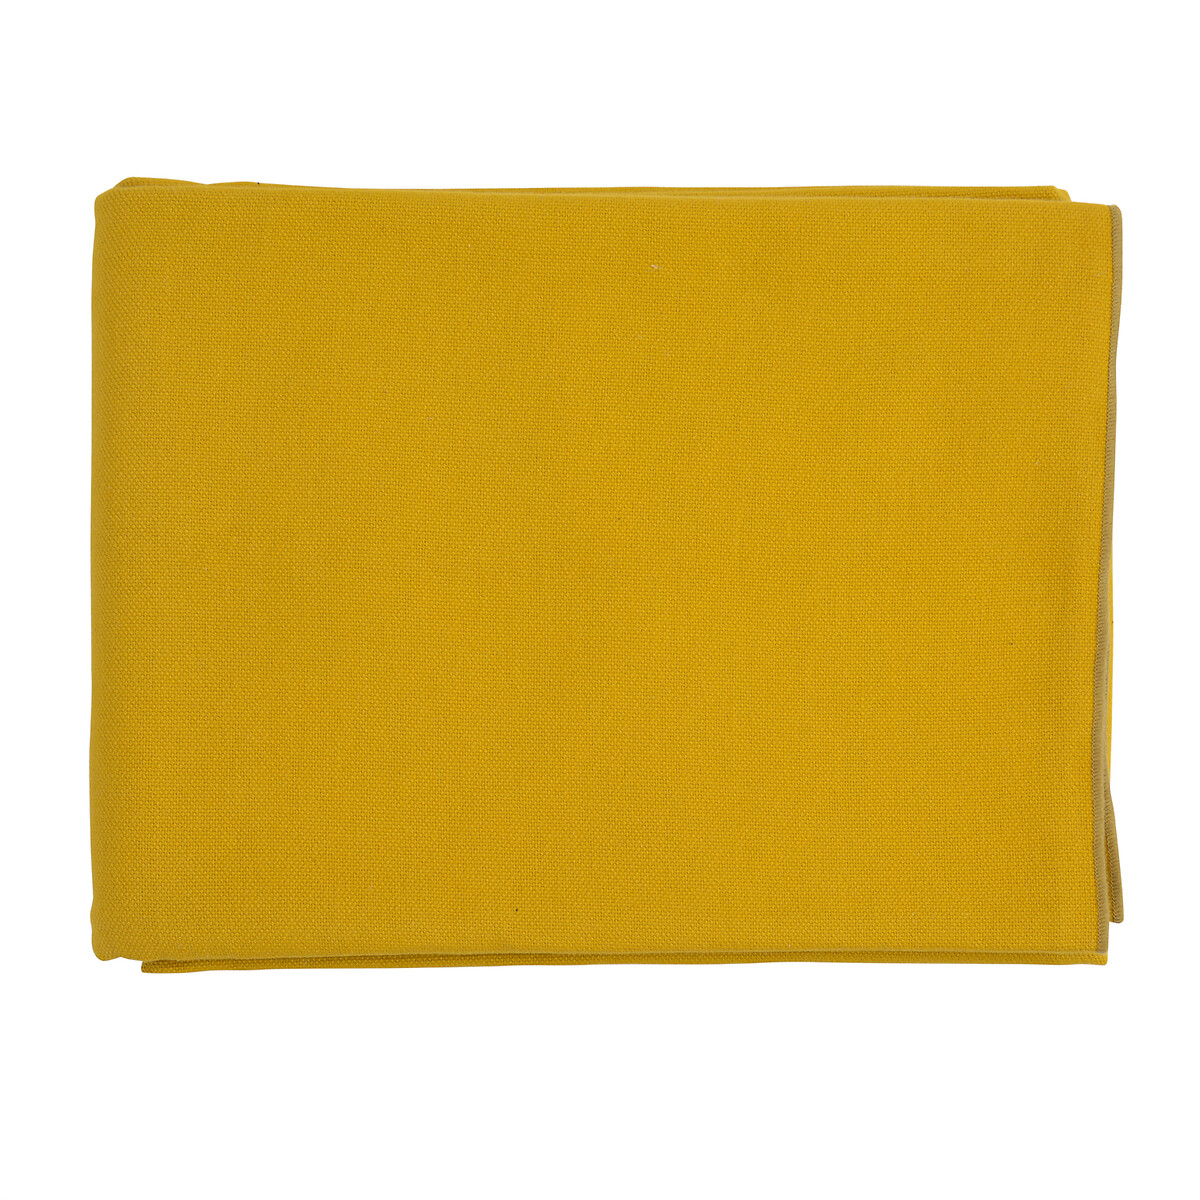 Покрывало Из фактурного хлопка горчичного цвета с контрастным кантом из коллекции Essential 180 x 250 см желтый LaRedoute, размер 180 x 250 см - фото 2